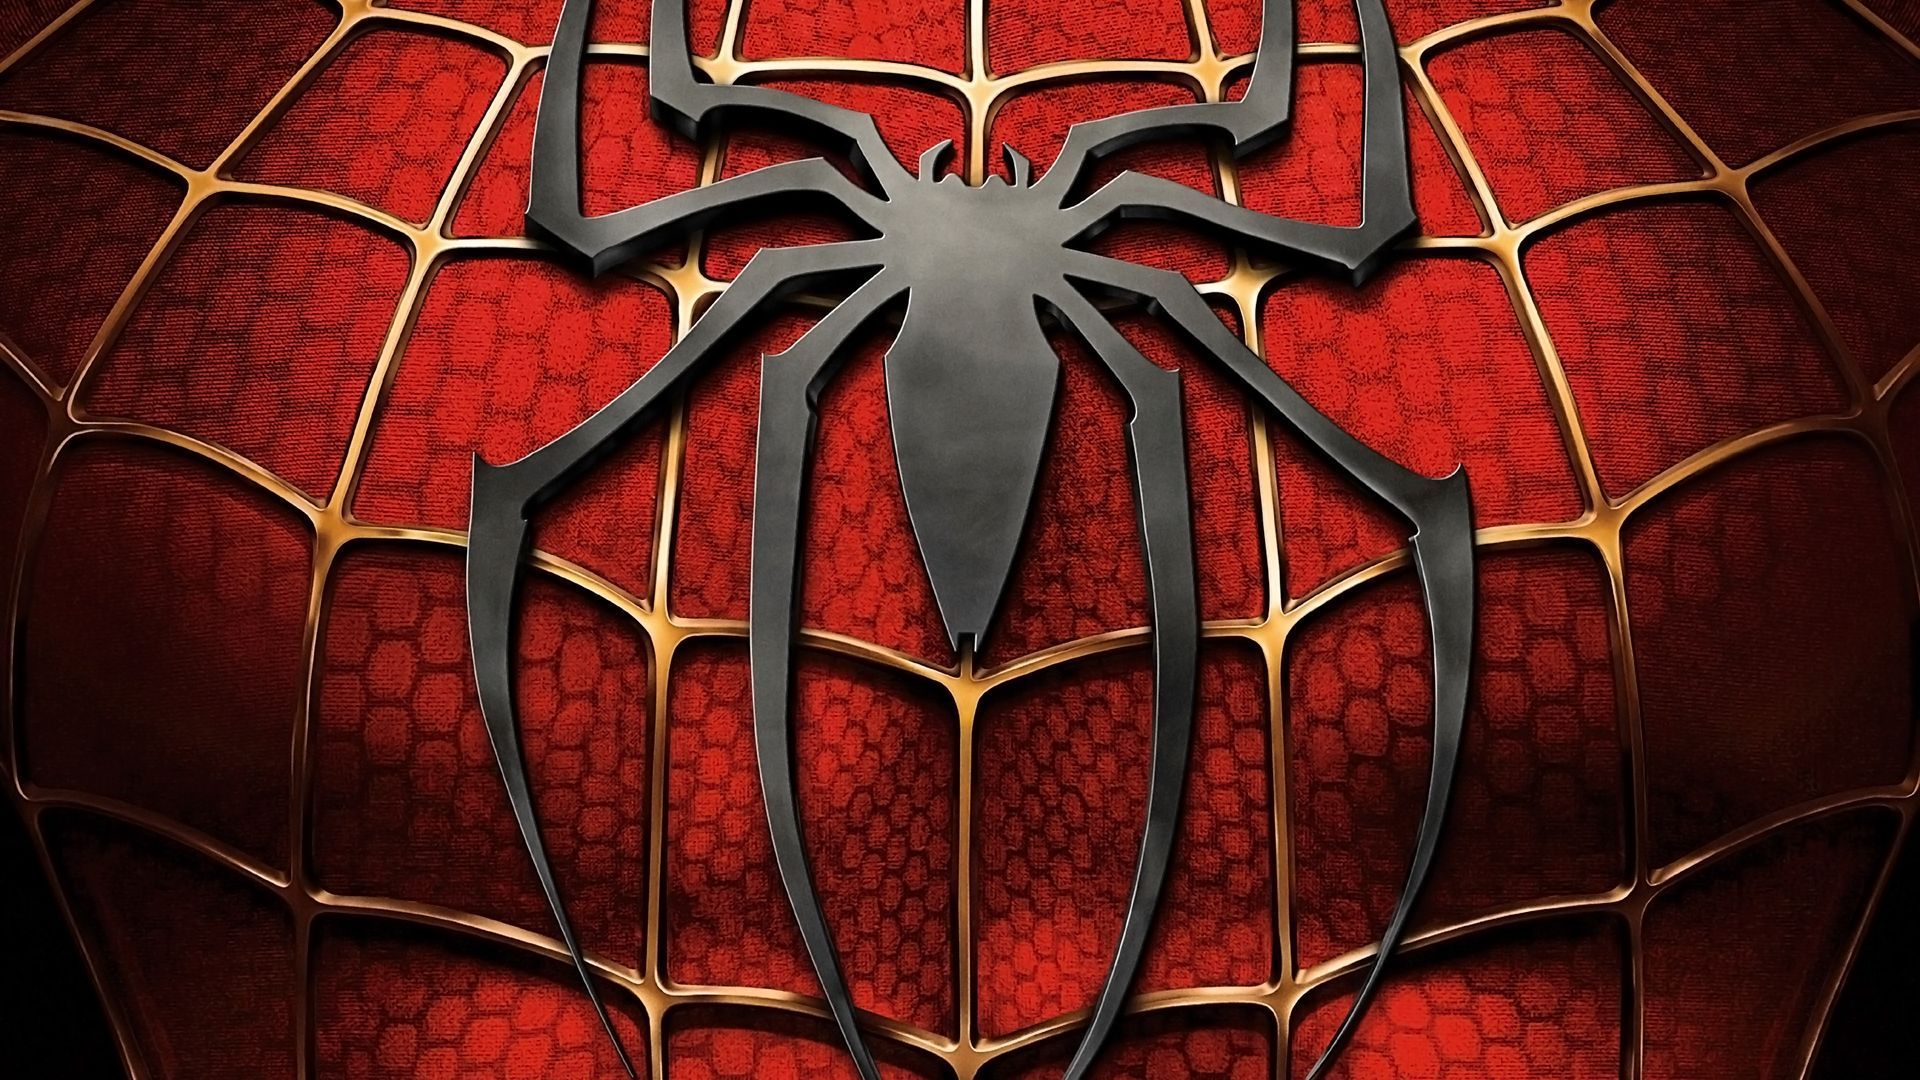 fond d'écran spiderman hd,rouge,homme araignée,personnage fictif,symétrie,vitrail